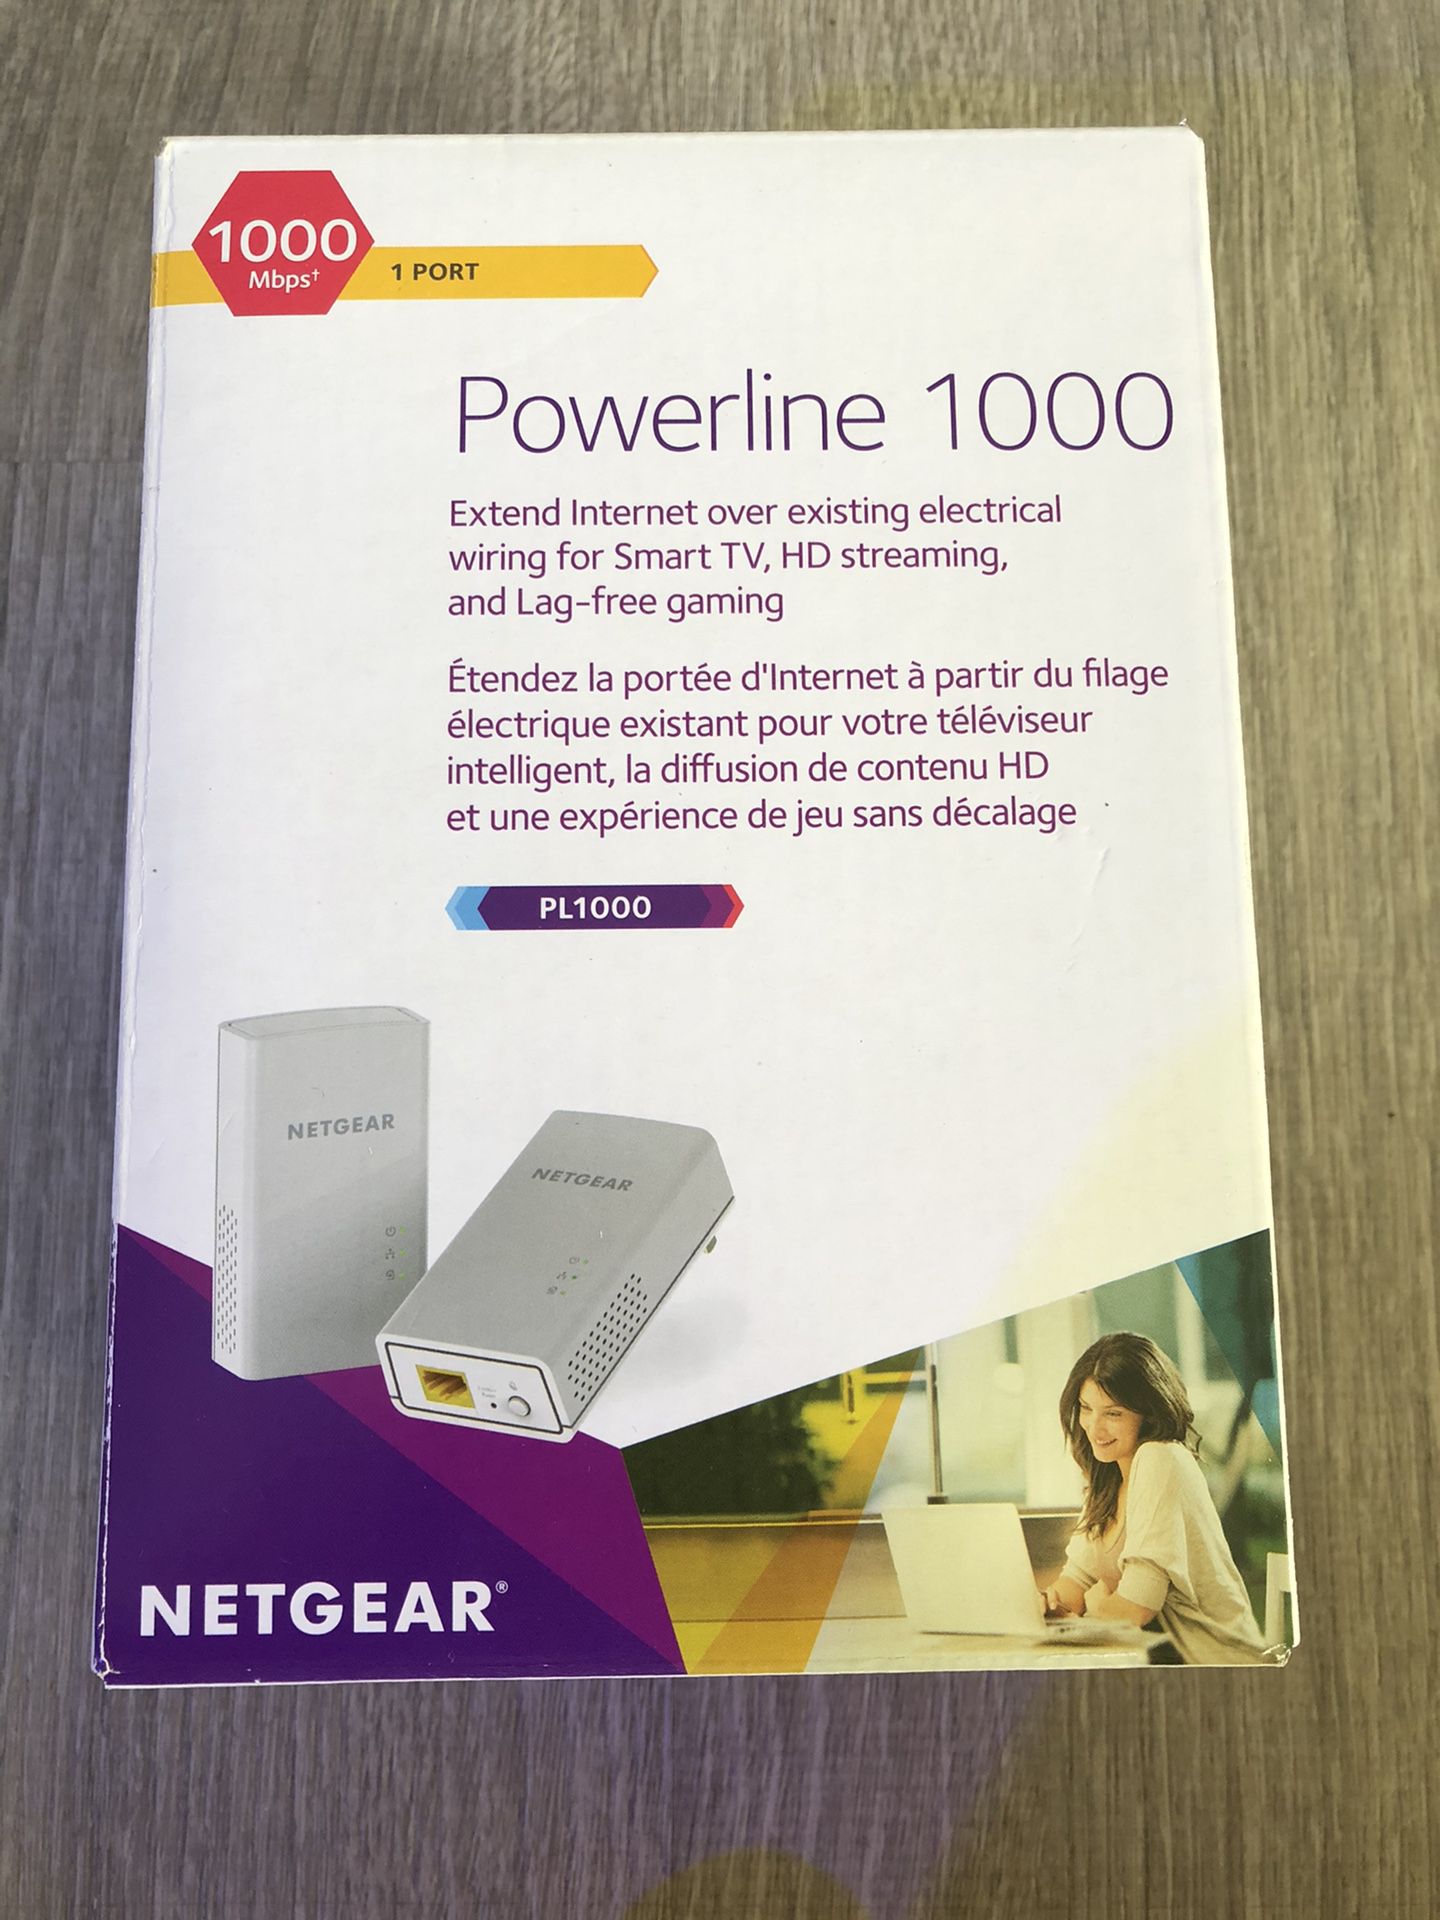 NETGEAR - Powerline 1000 Network Extender